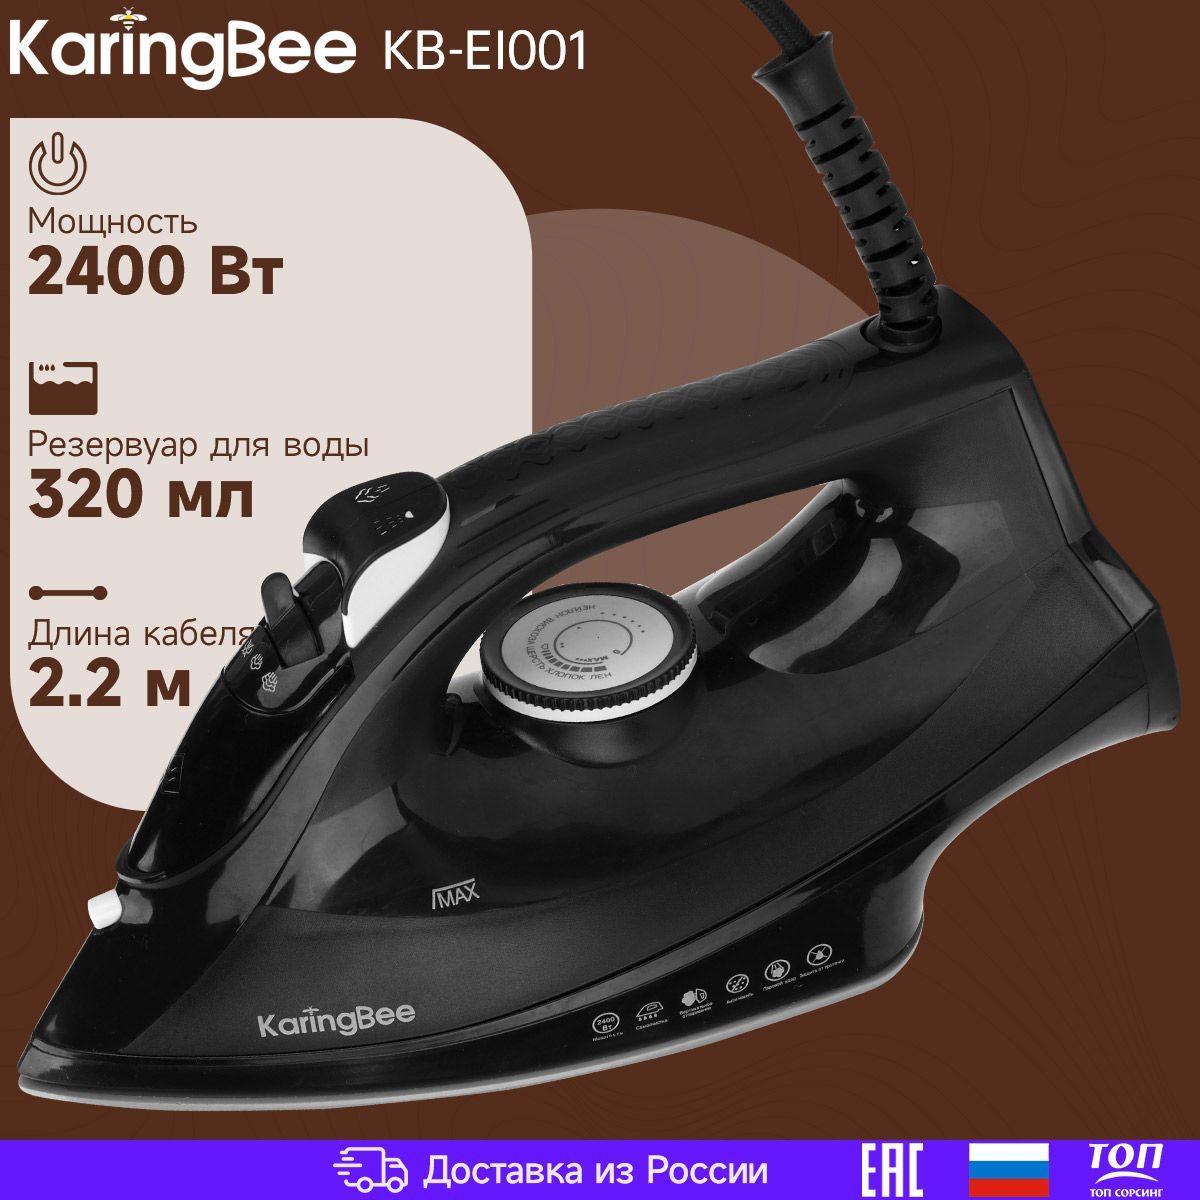 Утюг с отпаривателем KaringBee KB-EI001 черный. Уцененный товар